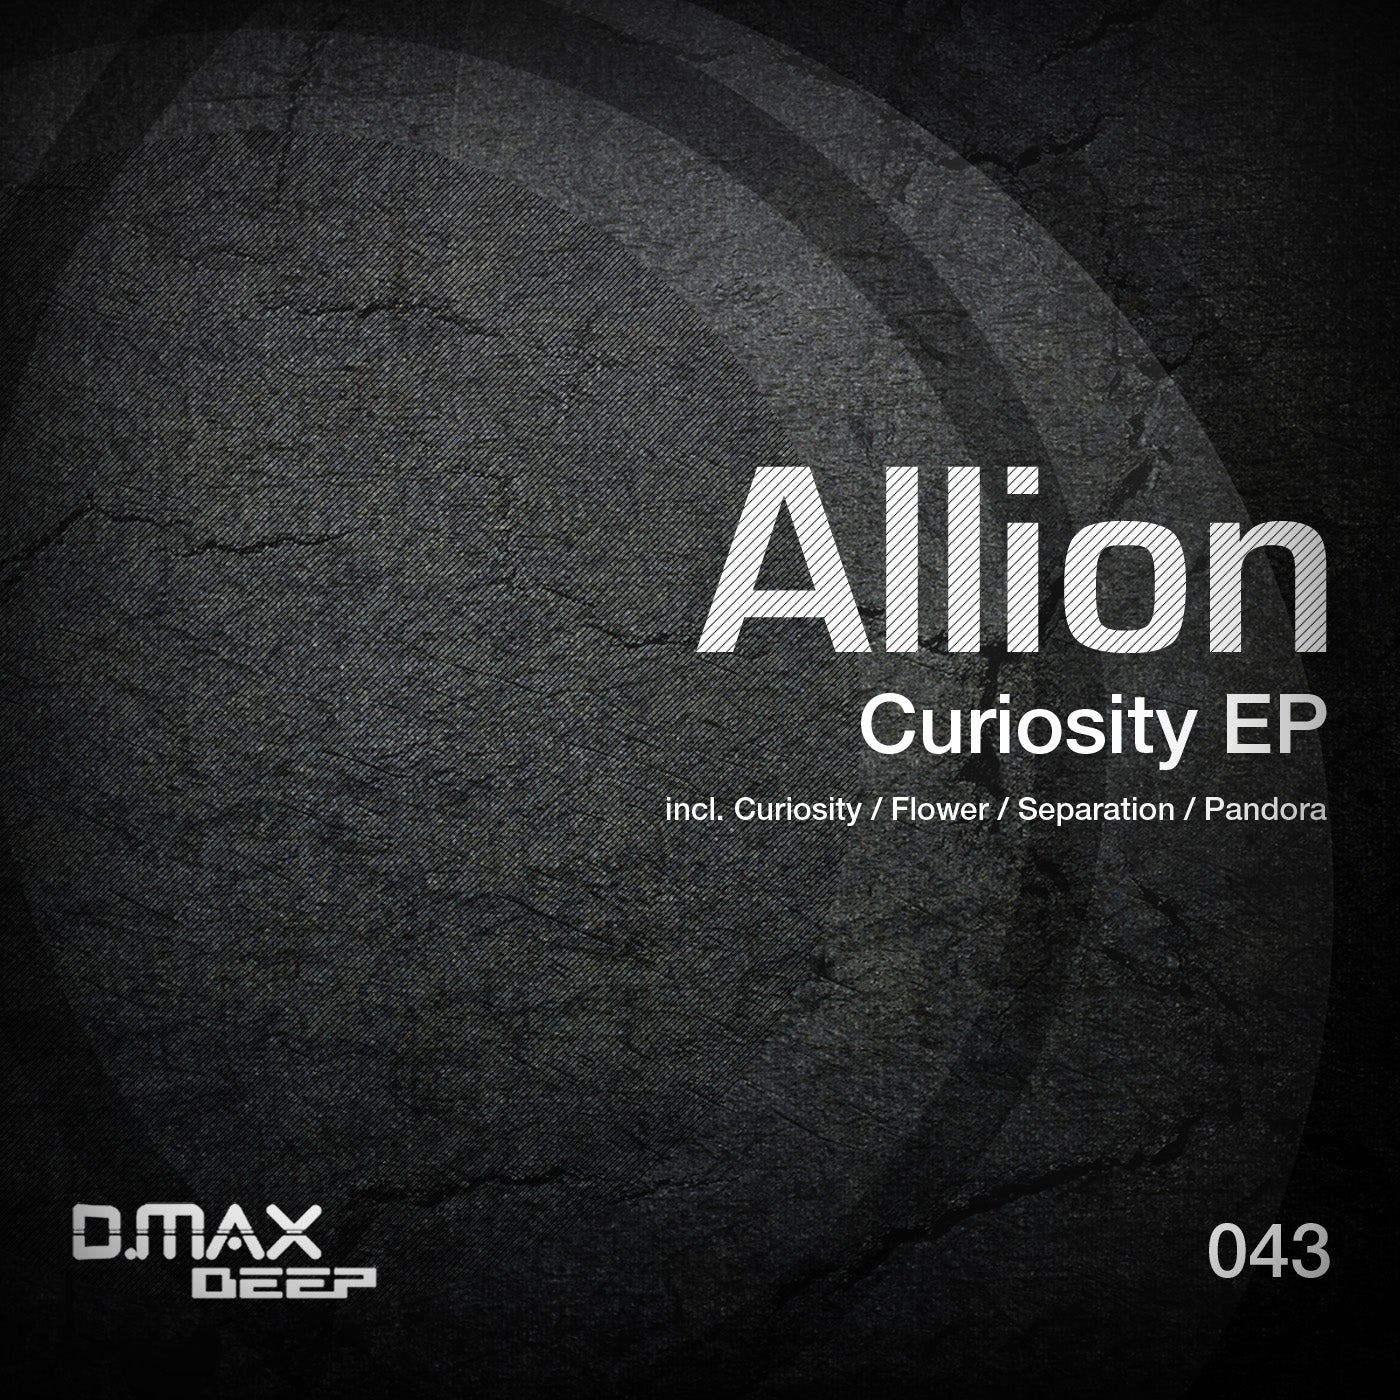 Curiosity EP